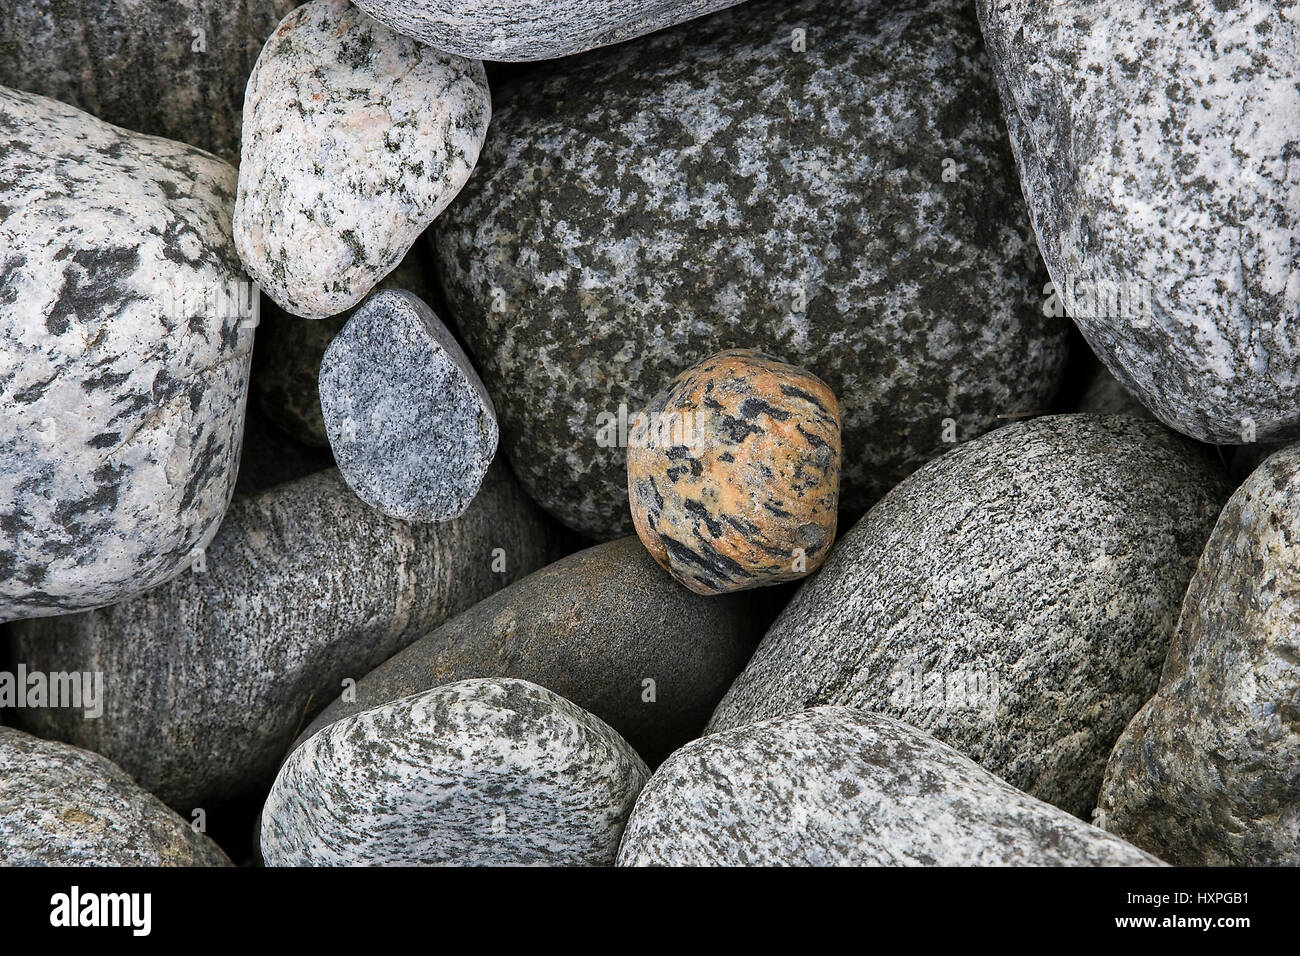 abgschliffene stones on the beach , abgschliffene Steine am Strand Stock Photo